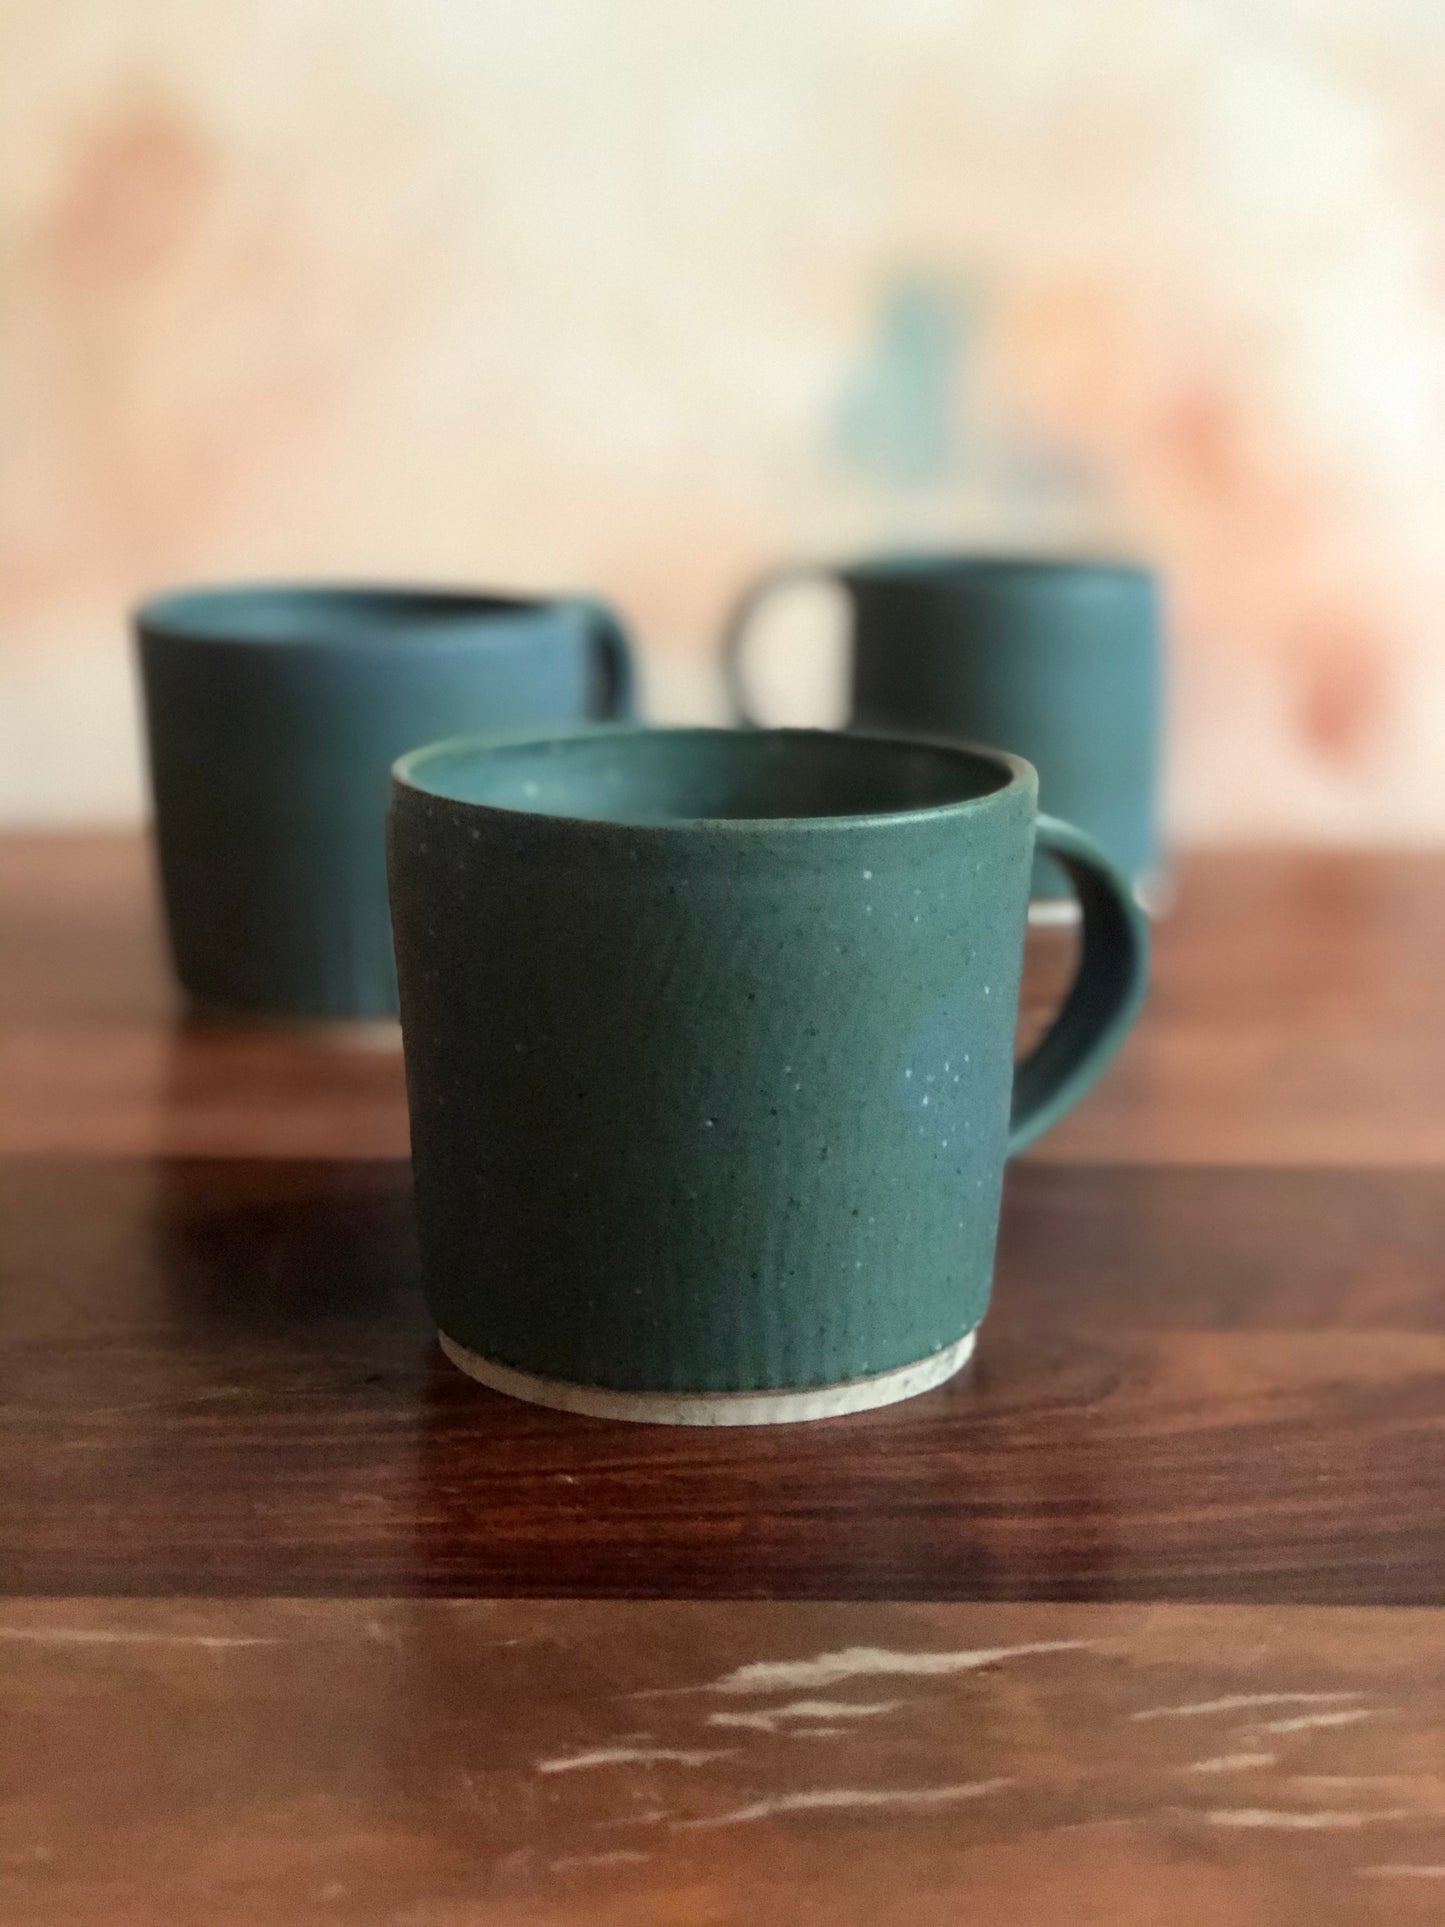 Speckled teal ripple mugs